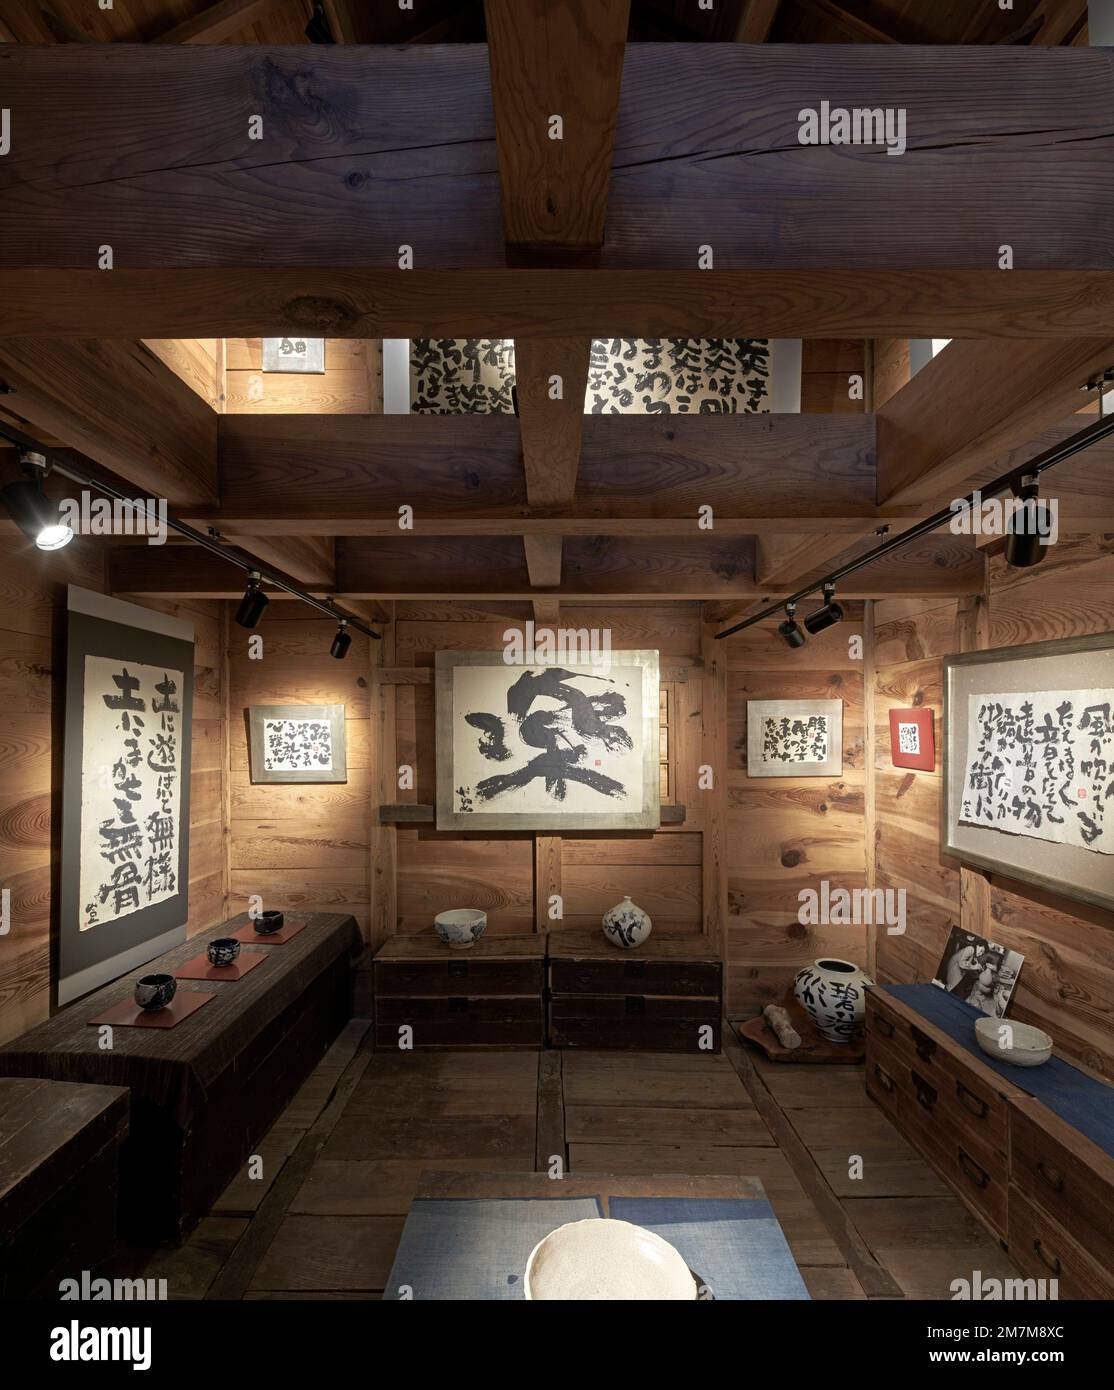 Galerieeinrichtung im Erdgeschoss. Kura-Galerie für Tokiko Kato, Kamogawa, Japan. Architekt: Atelier Bow Wow, 2022. Stockfoto